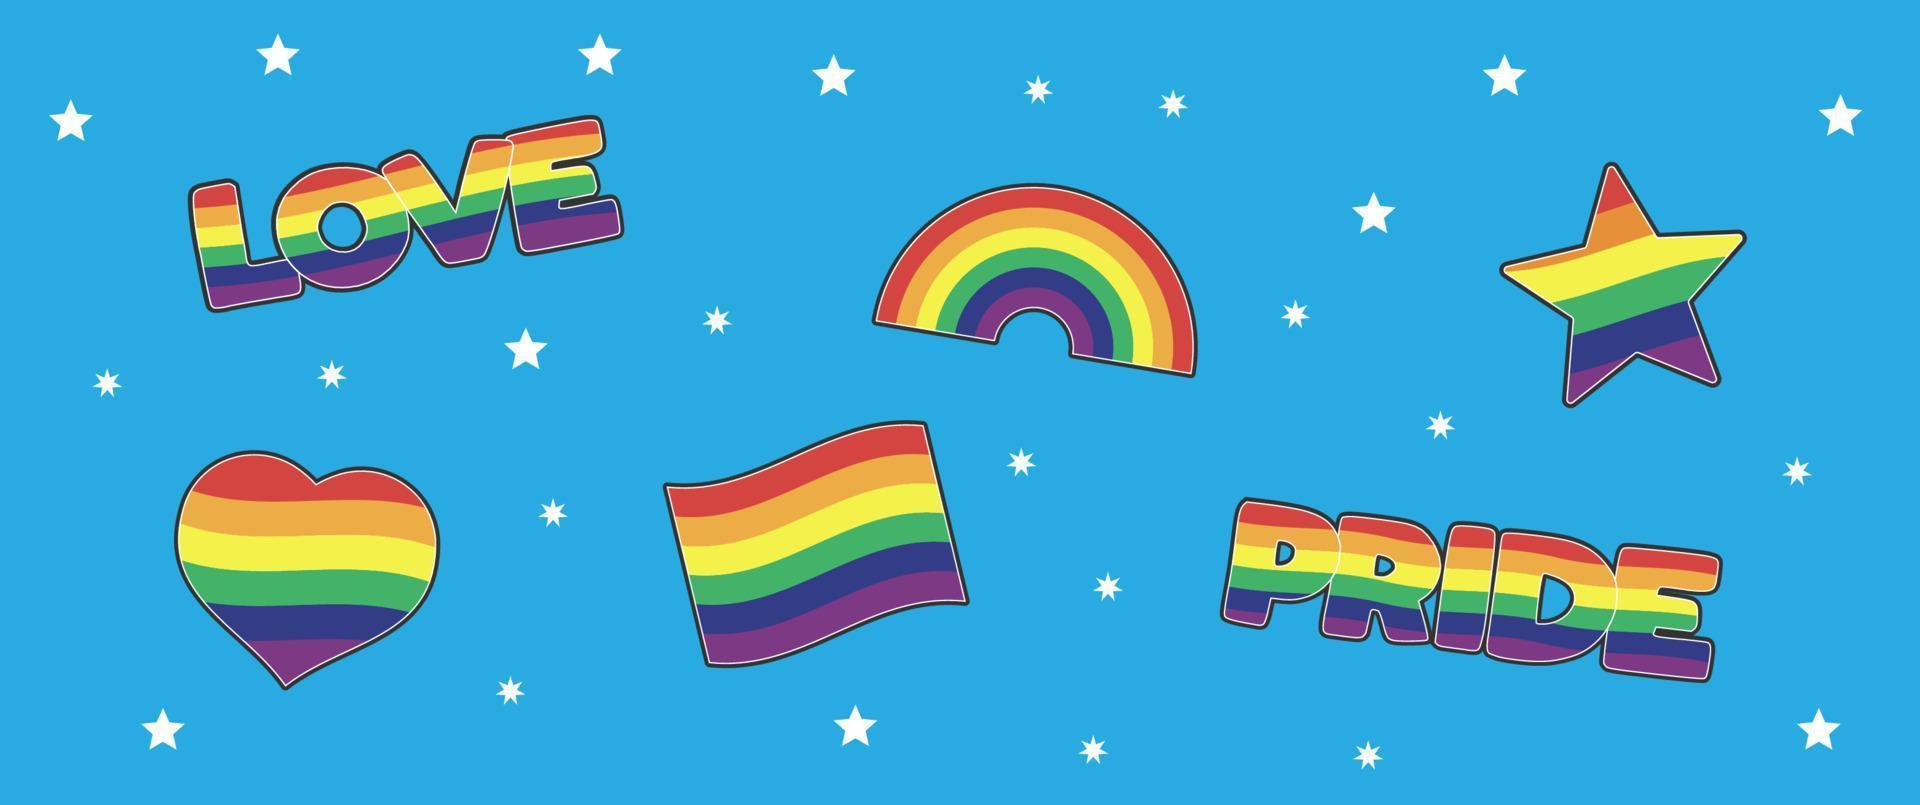 conjunto de lgbtq comunidad pegatinas con bandera, estrella y corazón formas con arco iris colores. orgullo mes símbolos y eslogan. gay desfile iconos vector